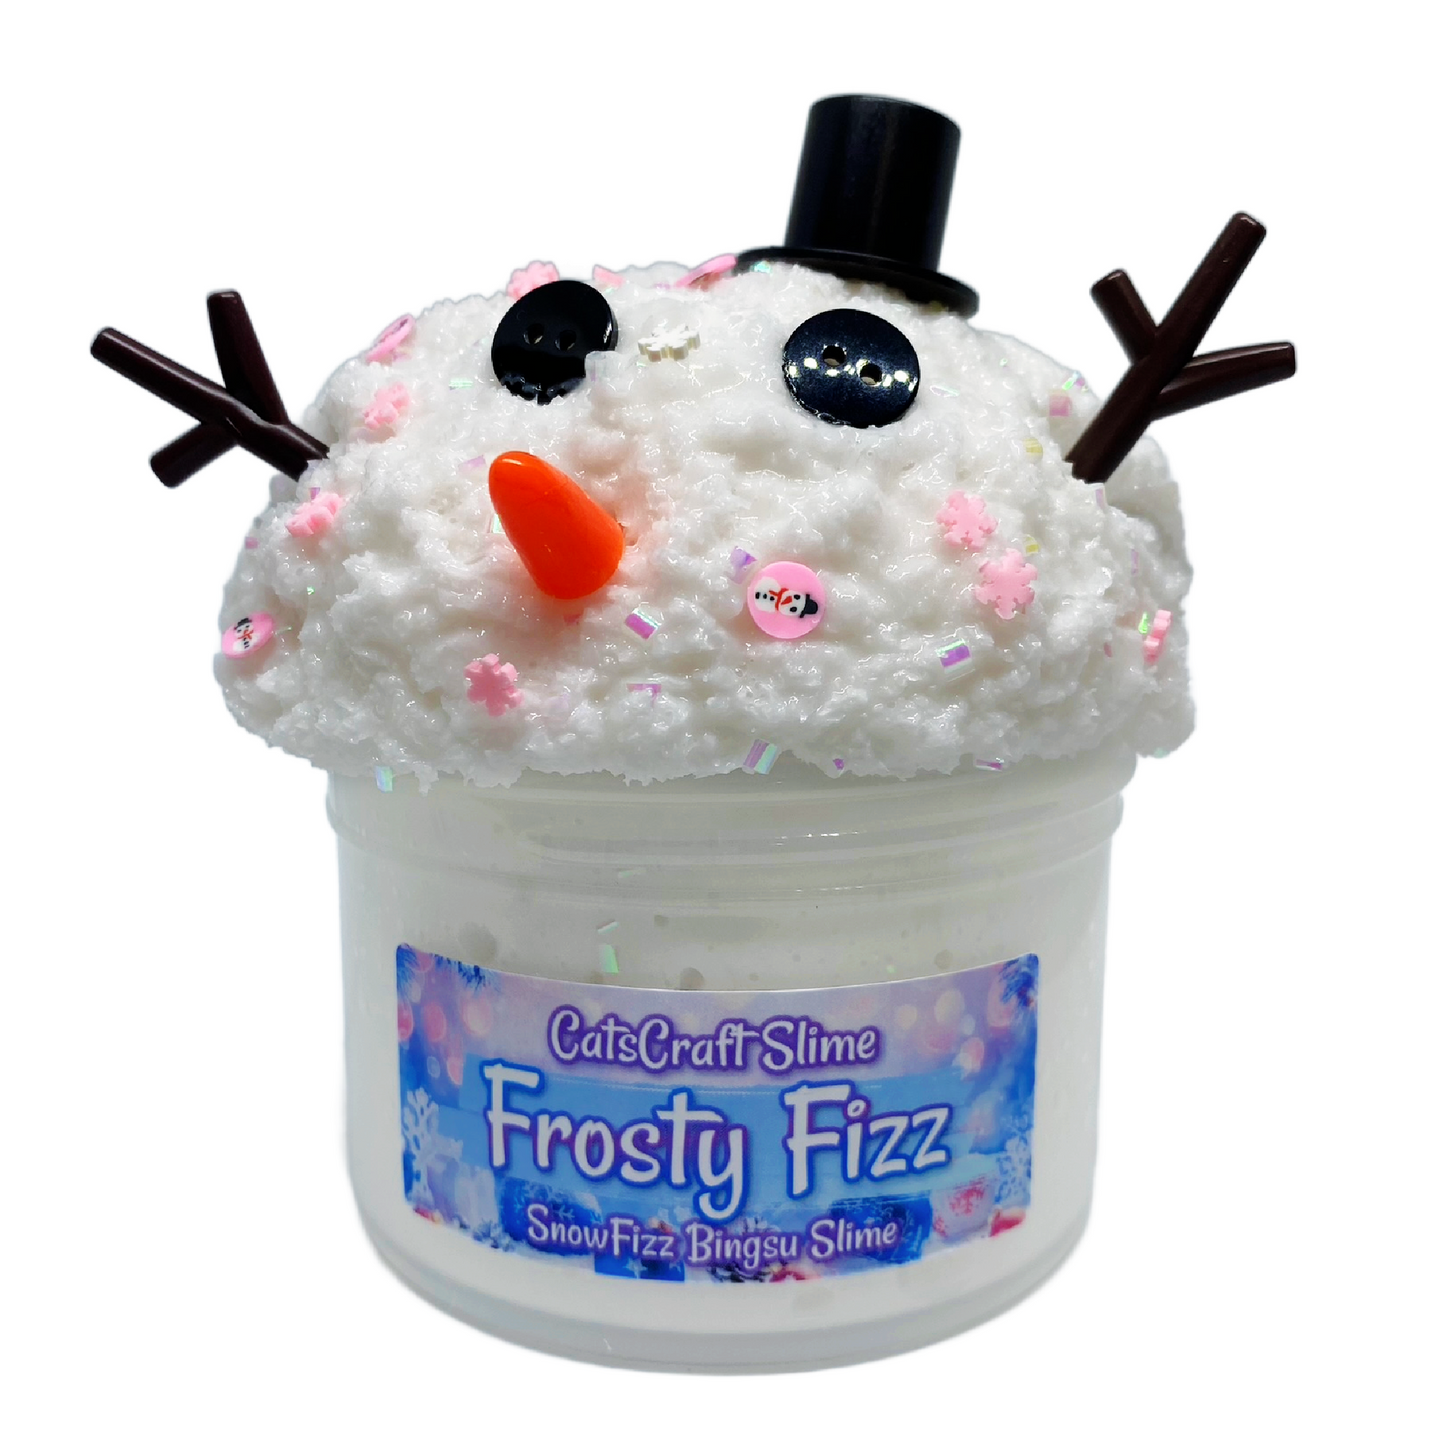 Snow Fizz Bingsu "Frosty Fizz" Scented crunchy Slime ASMR with snowman Charms